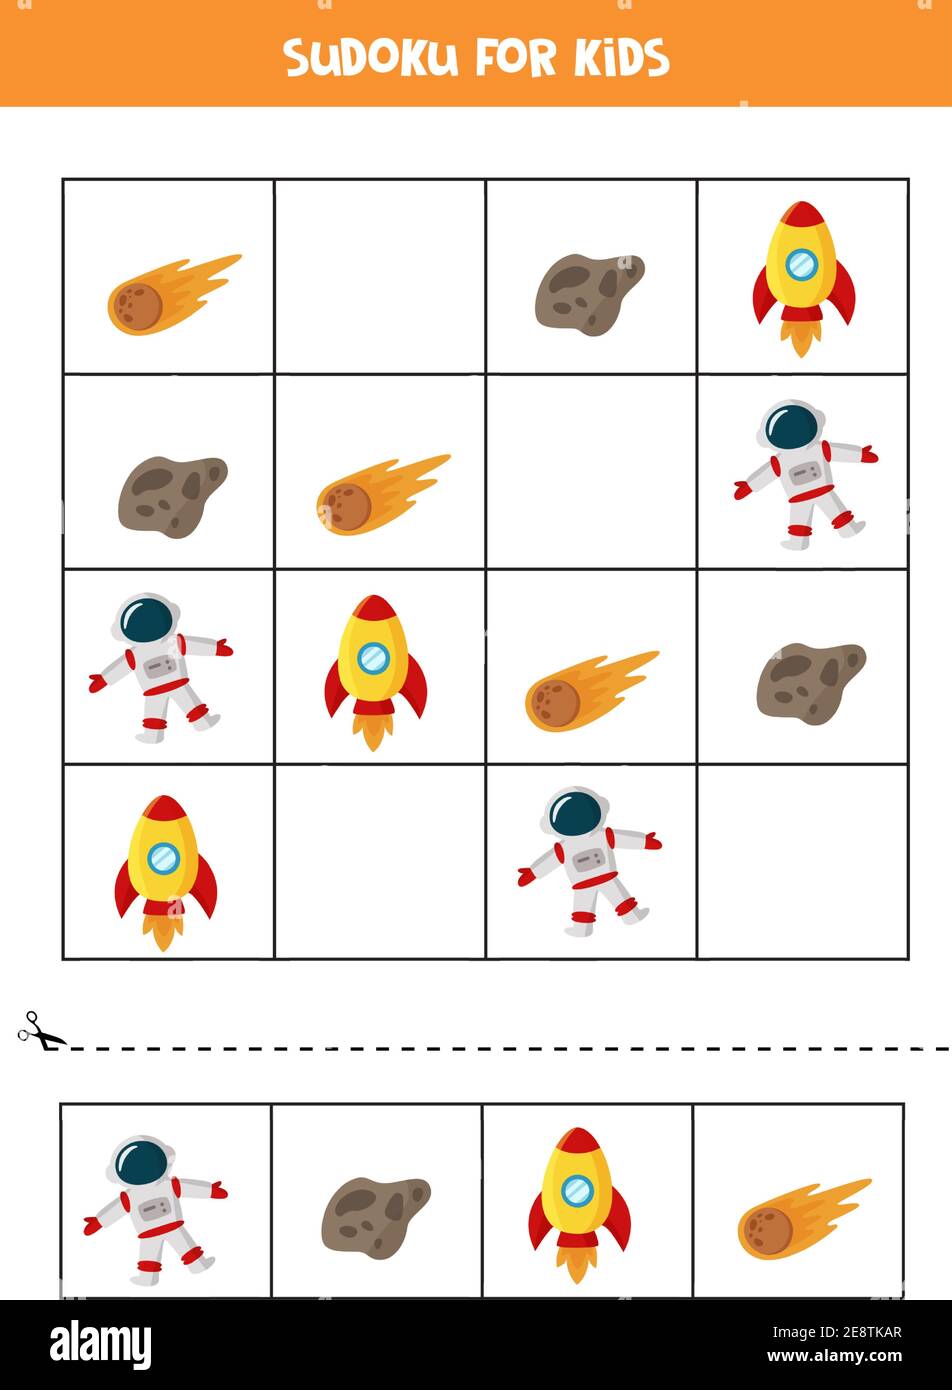 Spazio sudoku per bambini in età prescolare. Gioco logico con